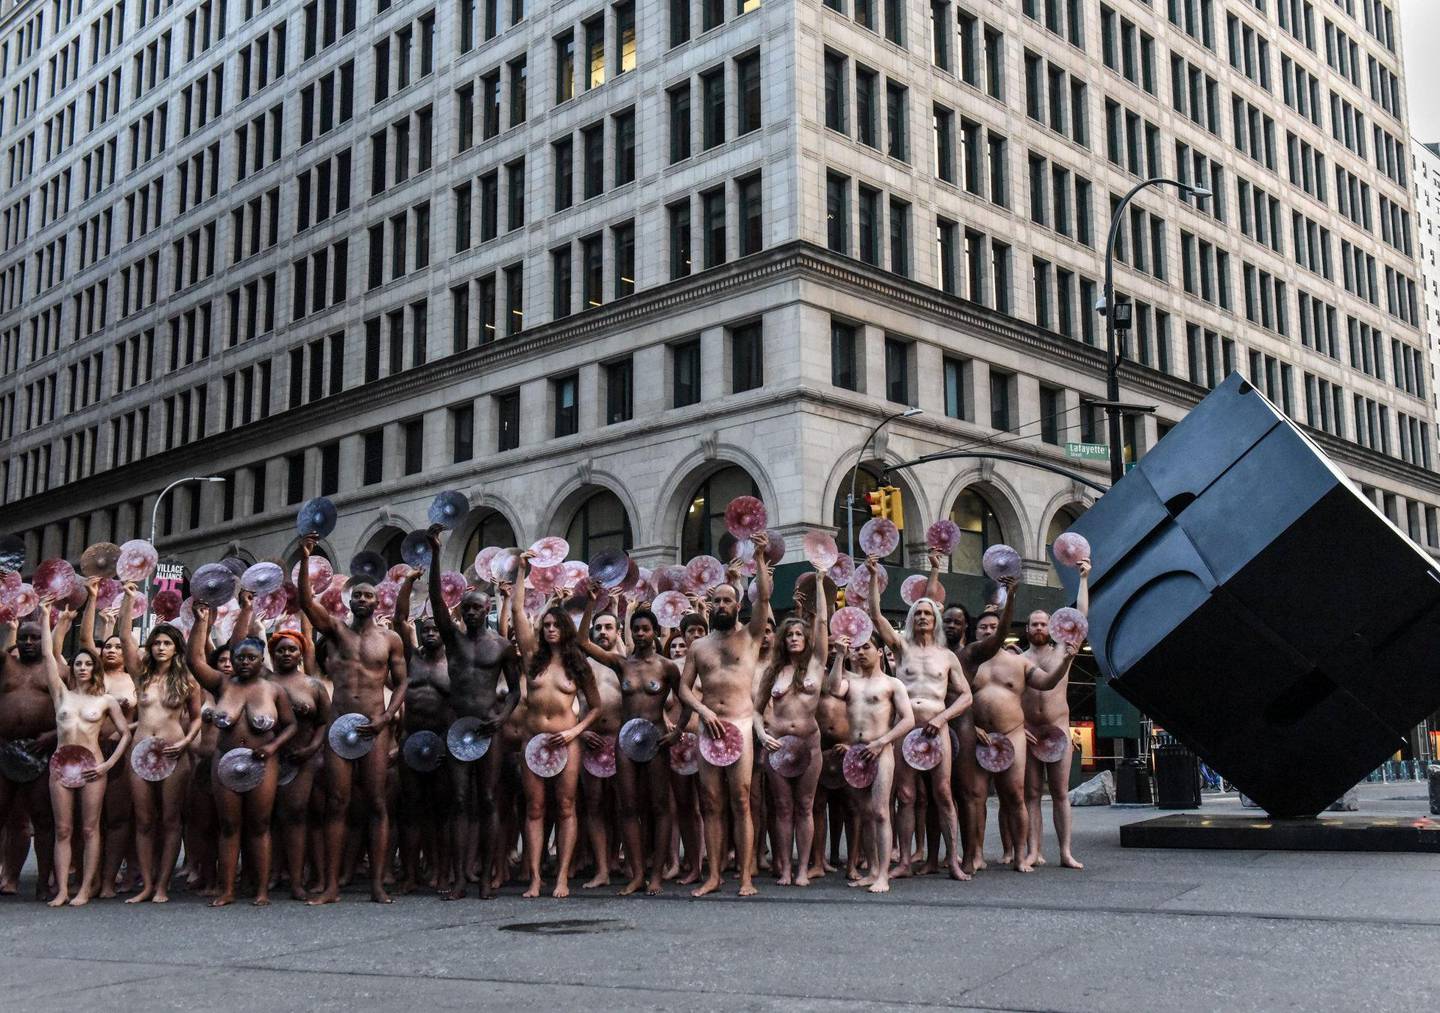 Facebook og instagrams sensur av bilder av nakenhet, inkludert klassiske kunstverk, skulpturer og statuer, har vakt reaksjoner og protester. Her fra en protest i regi av kunsteren Spencer Tunic utenfor Facebooks bygg i New York tidligere denne måneden: FOTO: STEPHANIE KEITH/AFP/NTB SCANPIX